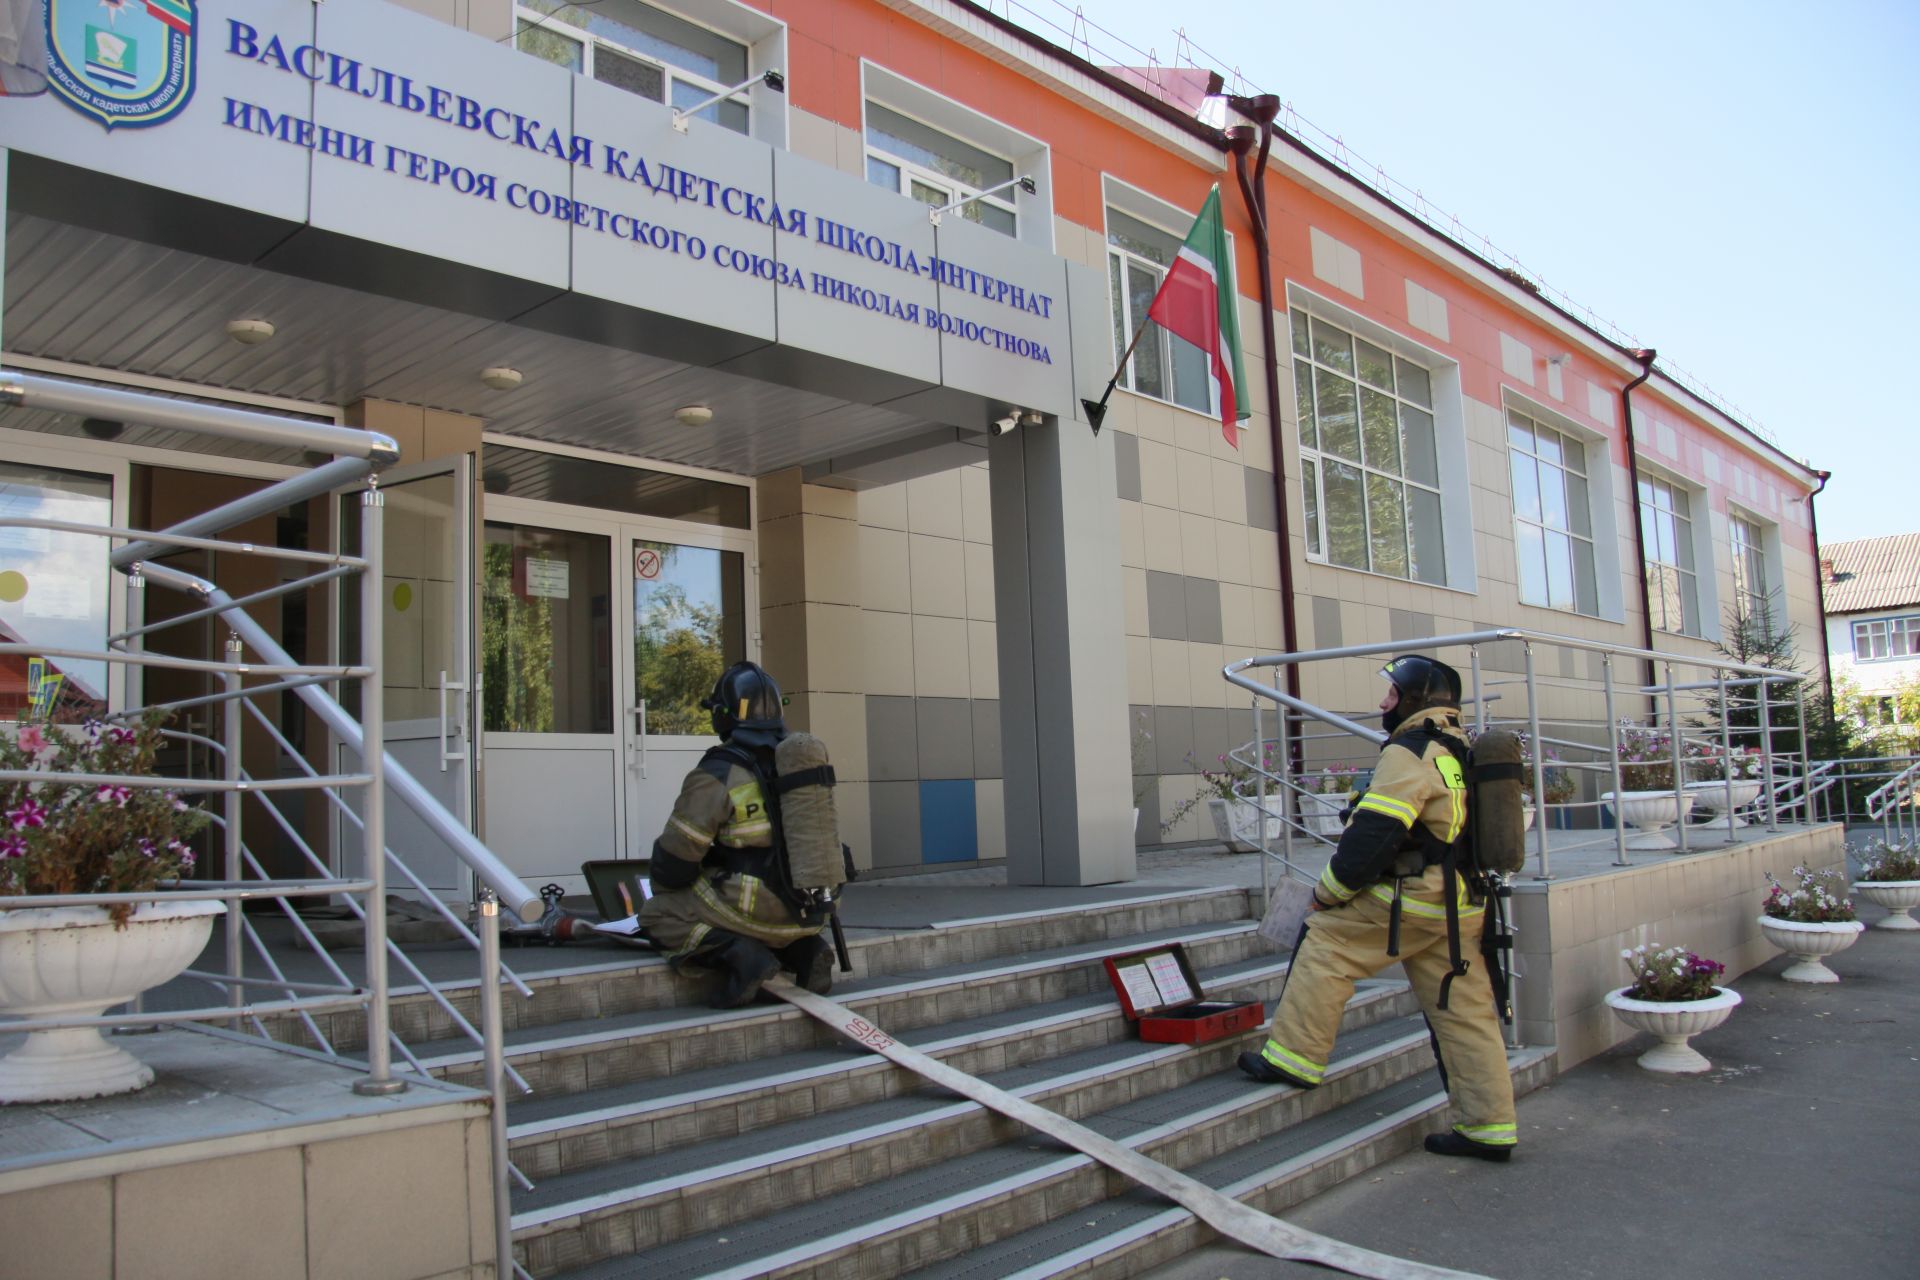 Зеленодольские пожарные провели пожарно-тактические учения в Васильевской кадетской школе-интернате